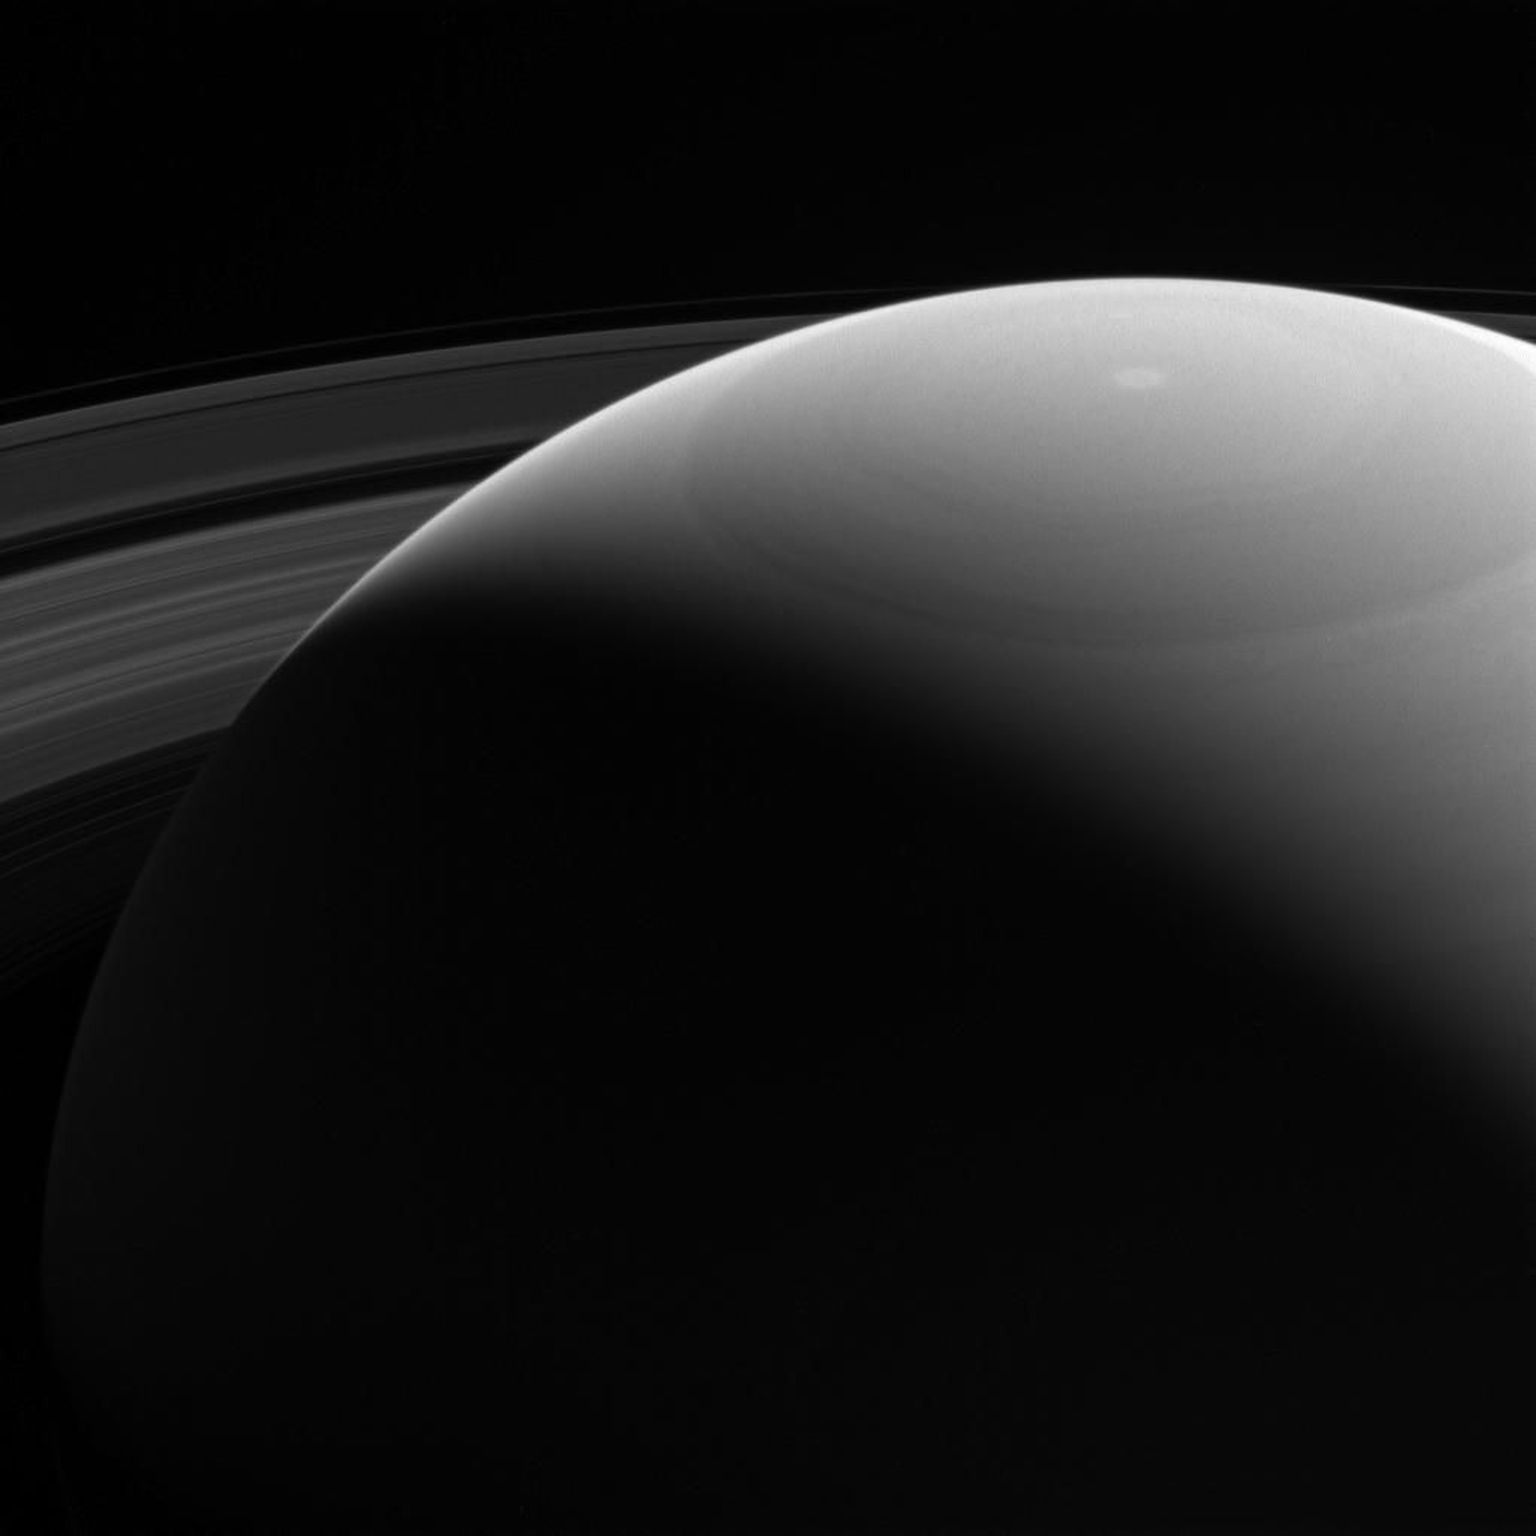 Cassini tehtud pilt Saturnist suudab tabada peaaegu kõik Päikesesüsteemi kuuenda planeedi olulisemad tunnused.